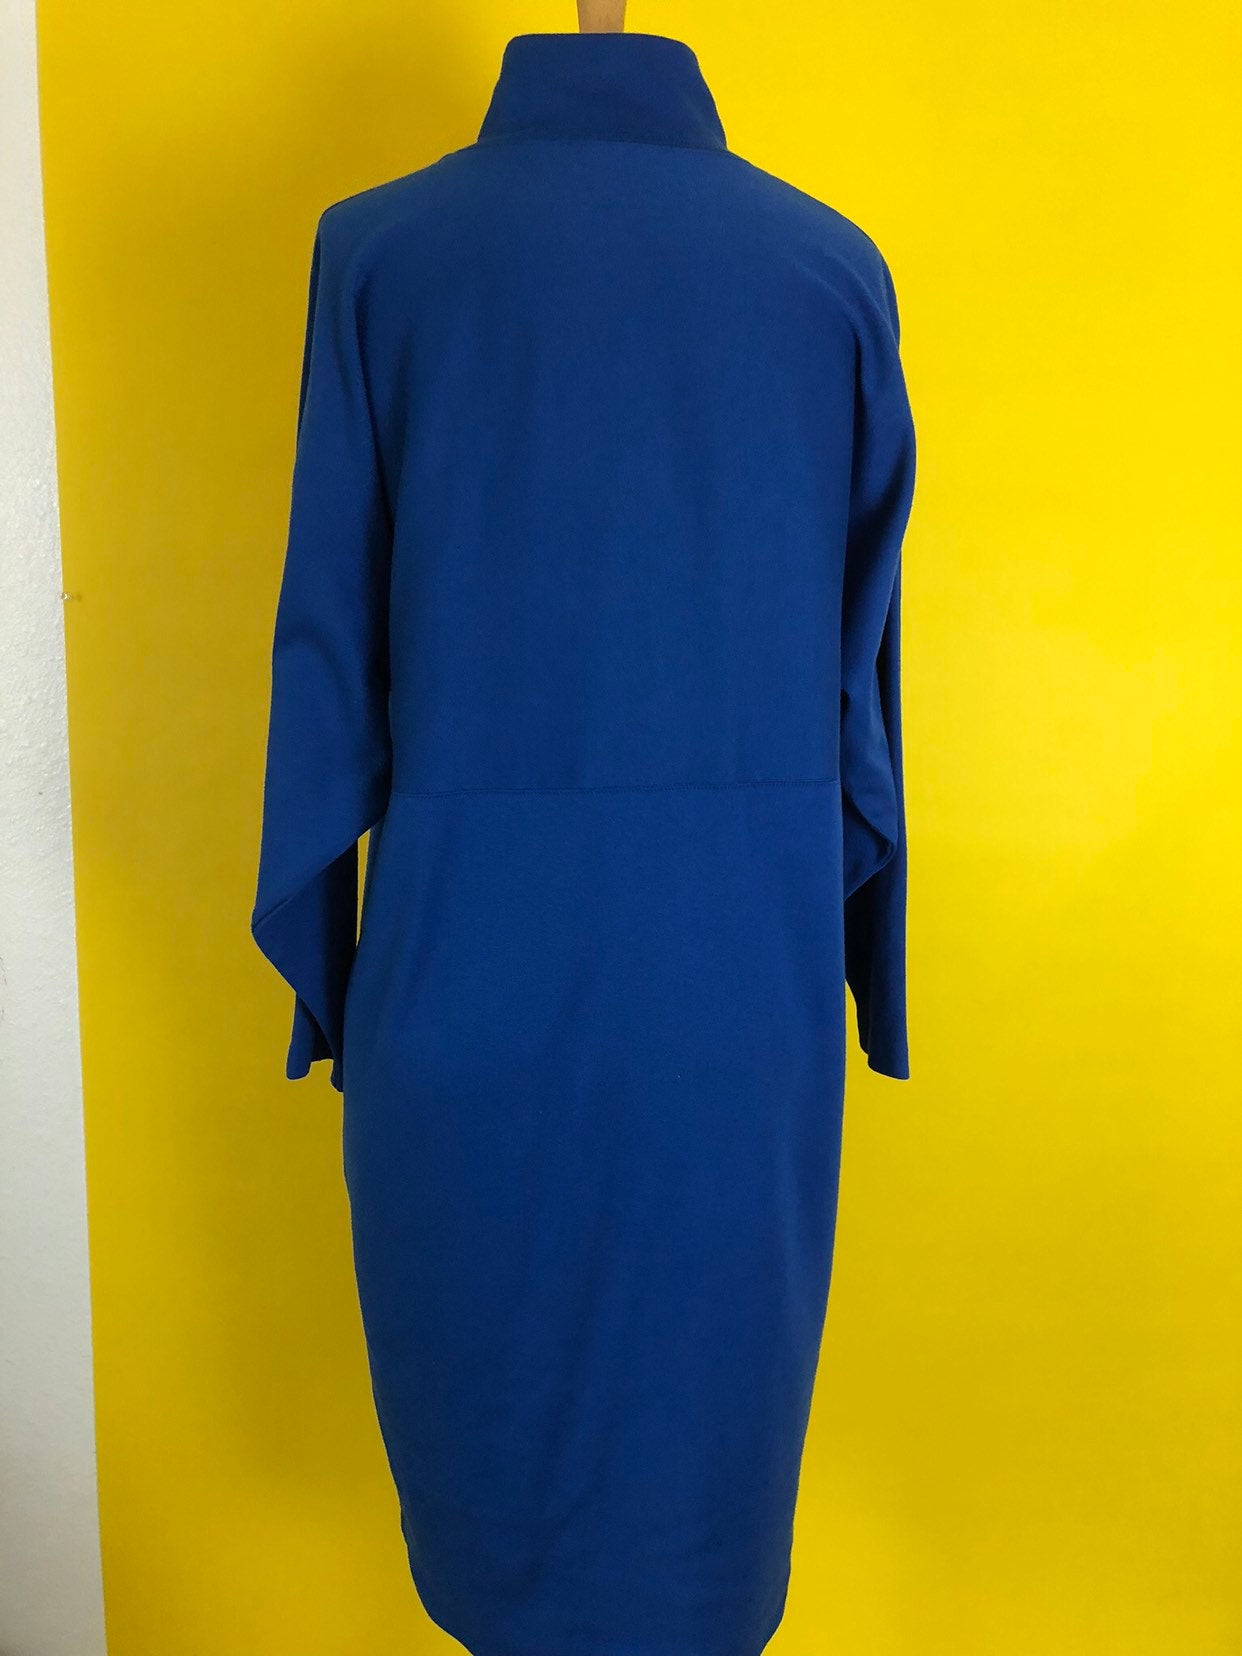 80s Blue Vintage Dress